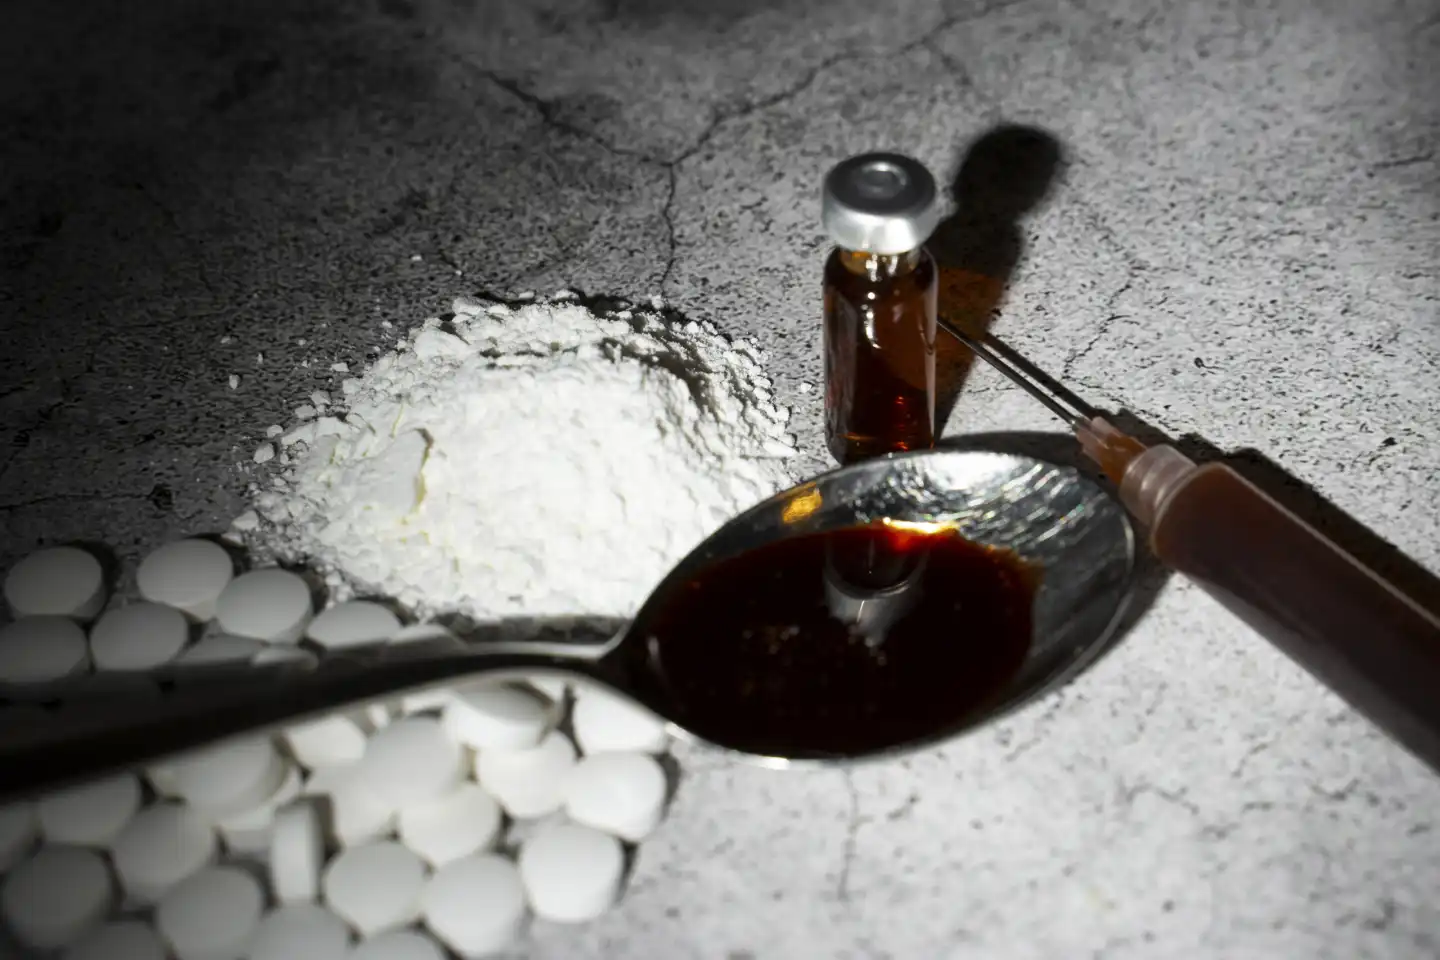 Symbolbild Drogen und illegale Substanzen. Ein Löffel mit einer braunen Flüssigkeiten neben einer Spritze, Tabletten und Pulver